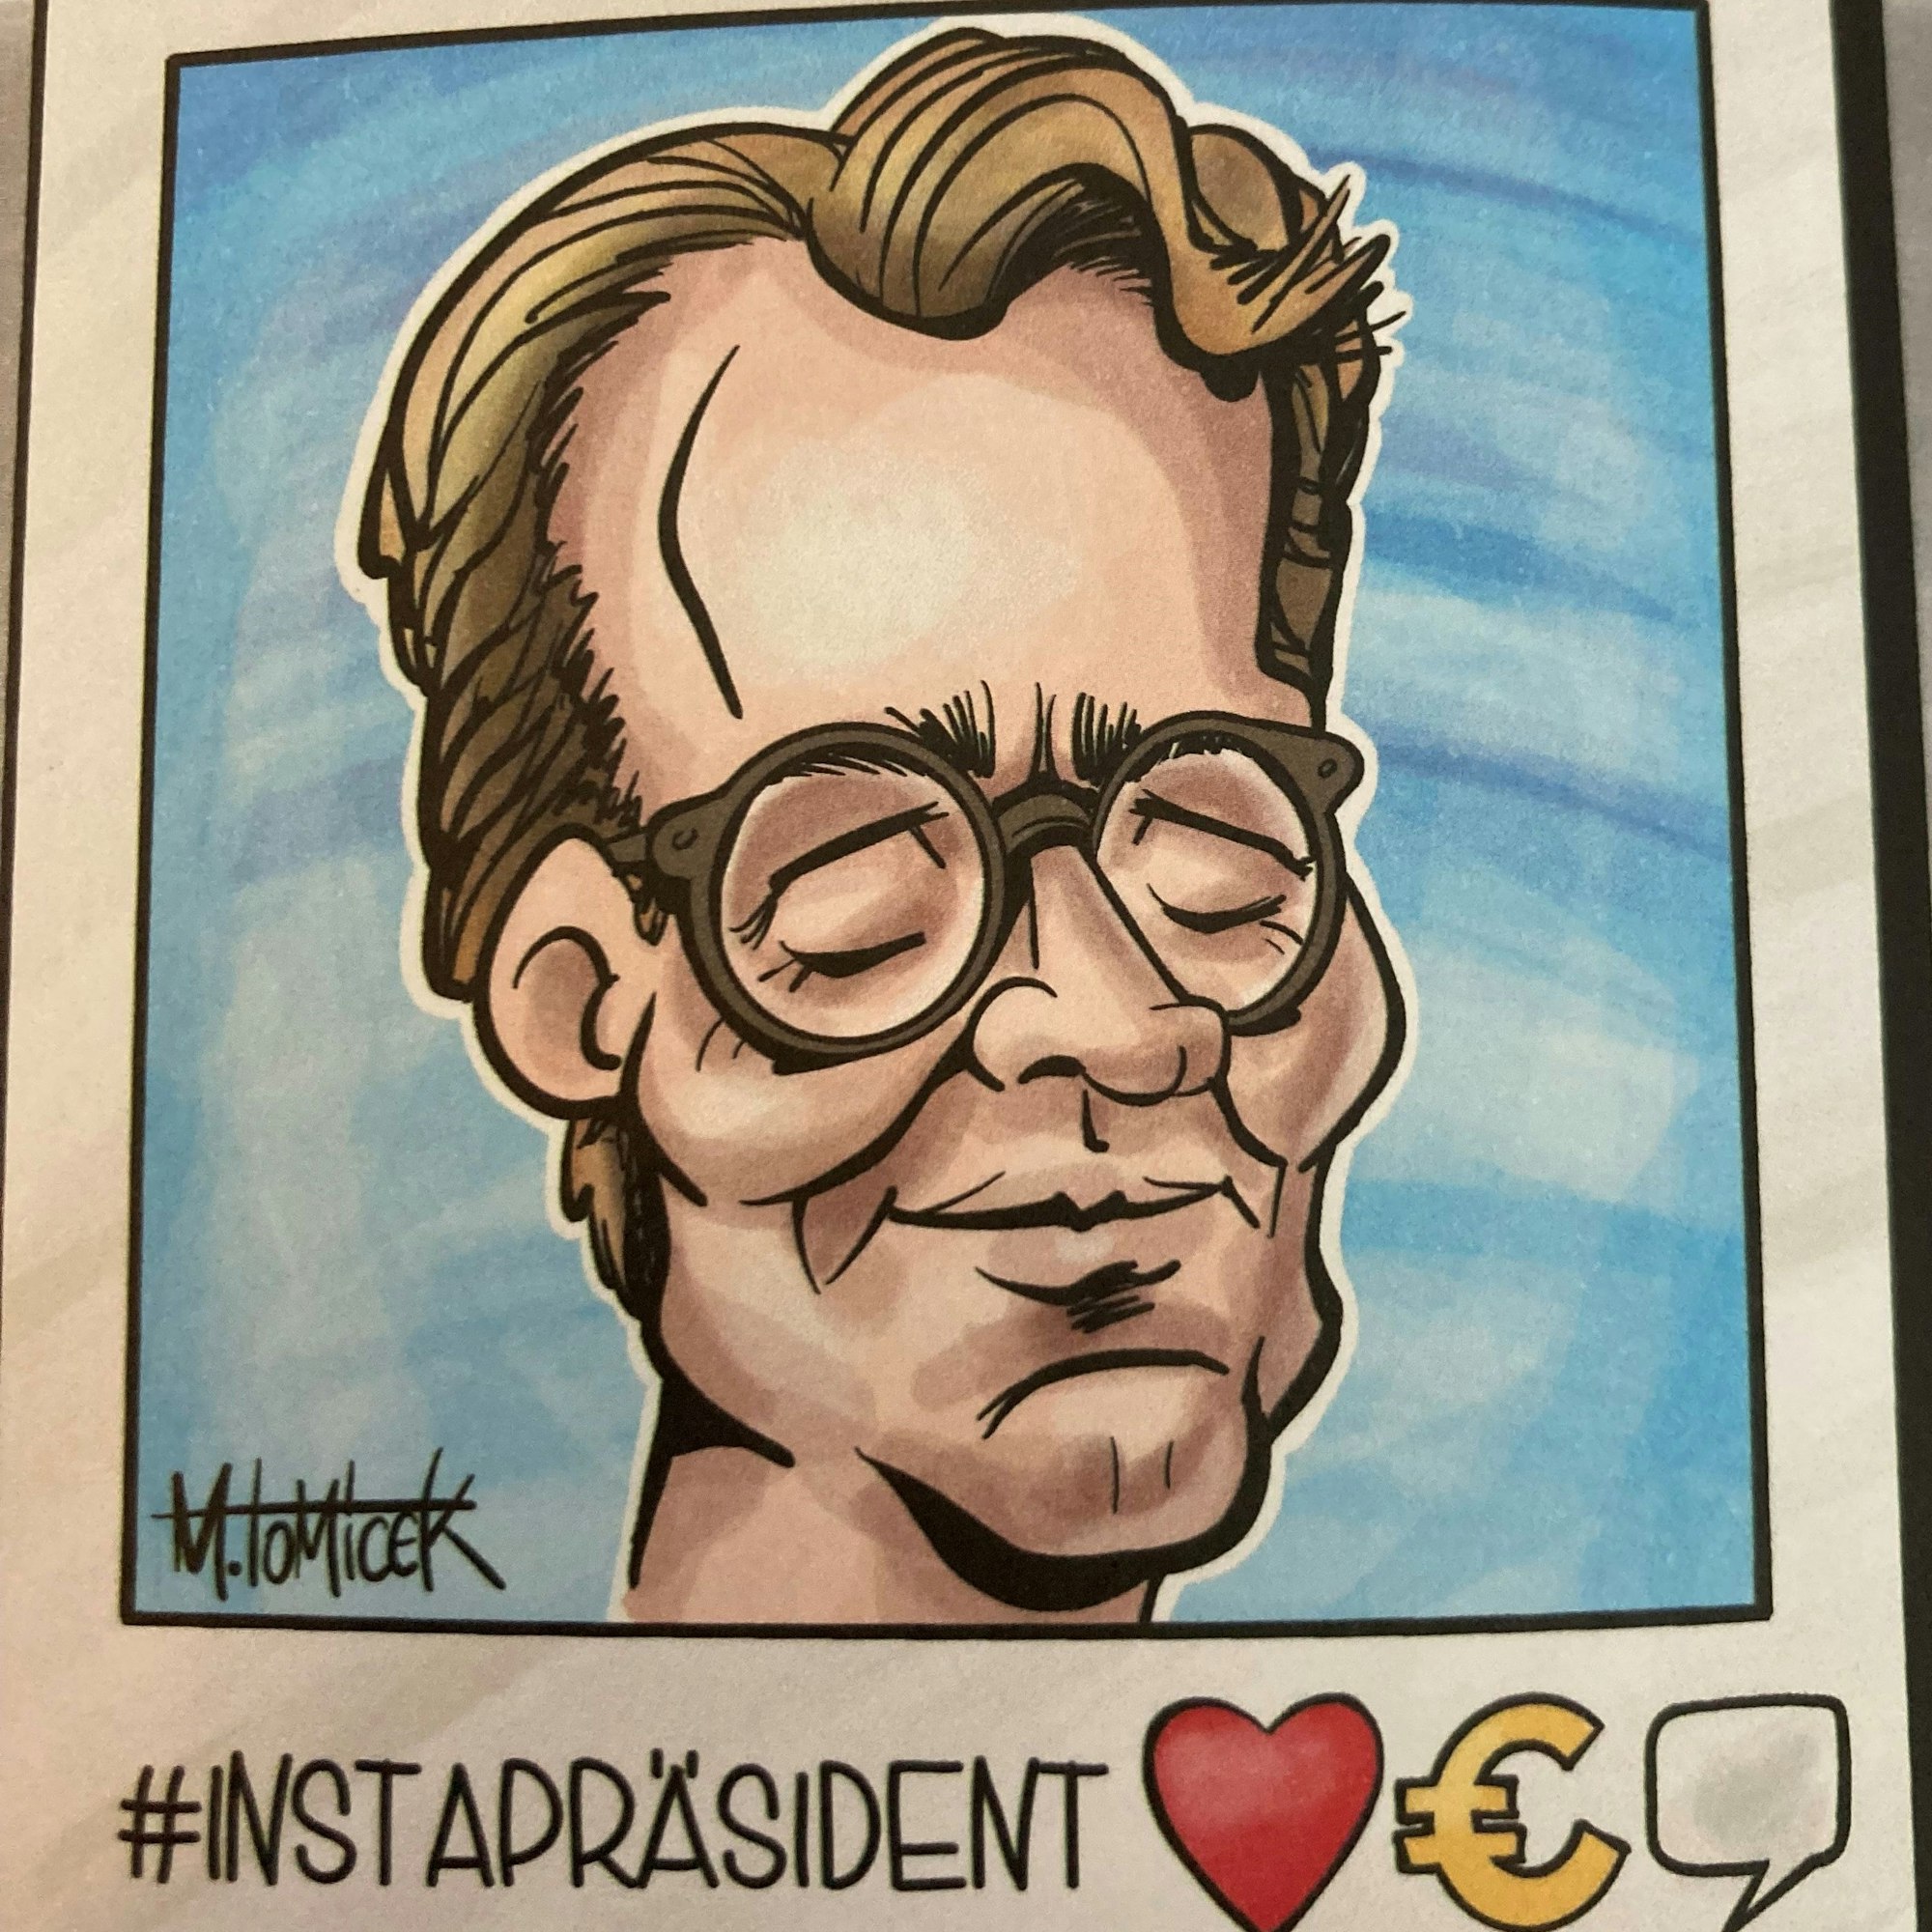 Motiv aus einer Broschüre der SPD: Hendrik Wüst, NRW-Ministerpräsident, ist als Karikatur gezeichnet. Darunter steht Hashtag/Instapräsident.